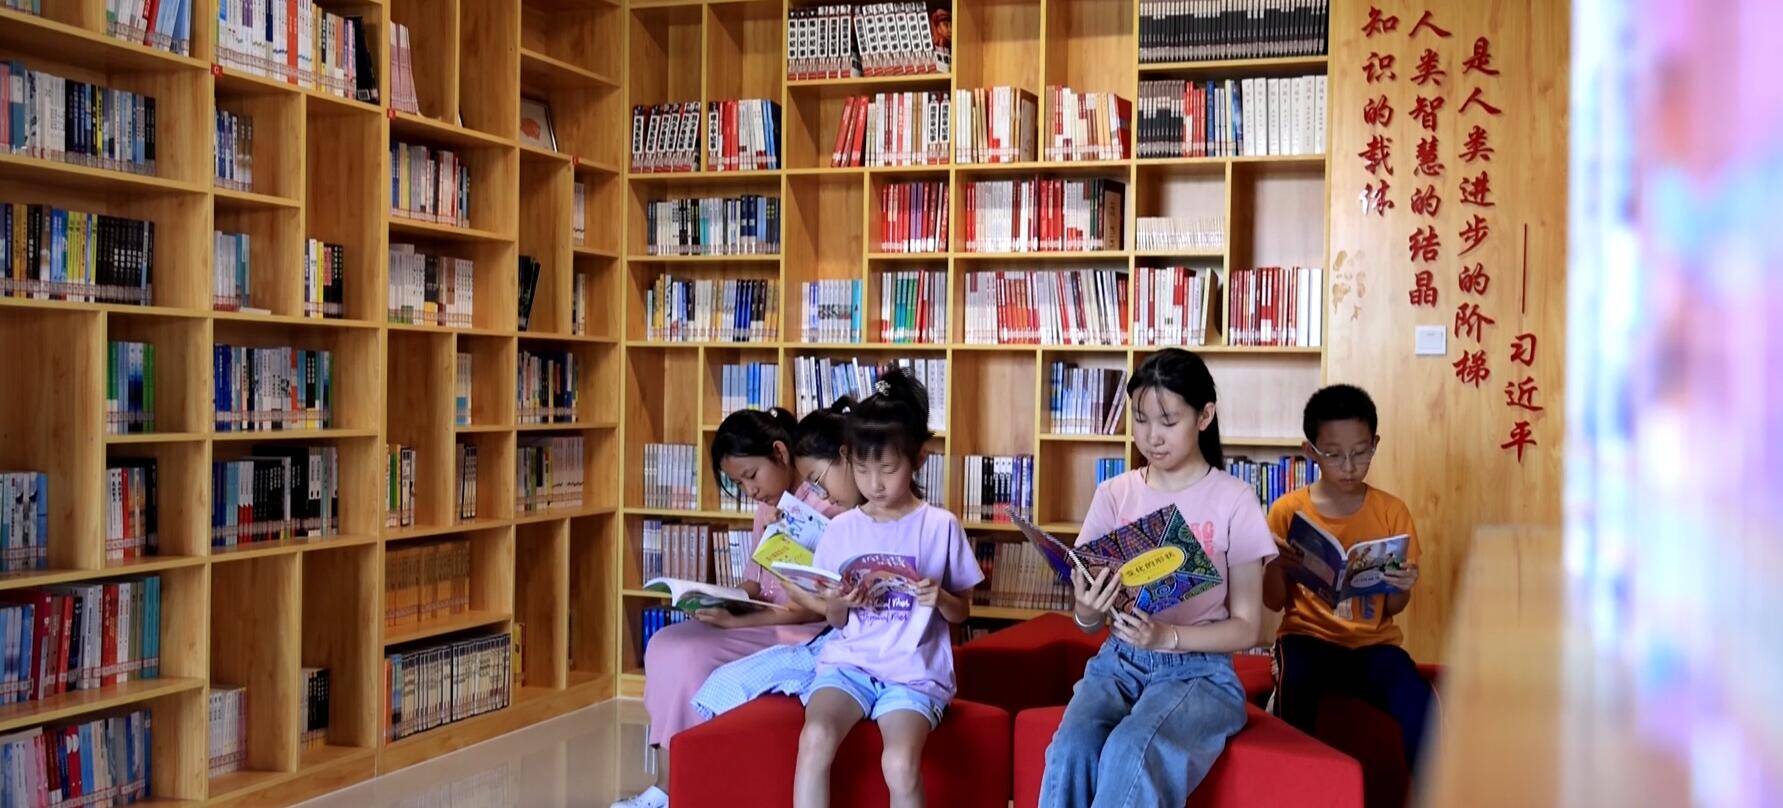 滨州市滨城区内300多家“农家书屋” 成孩子们的“暑假乐园”